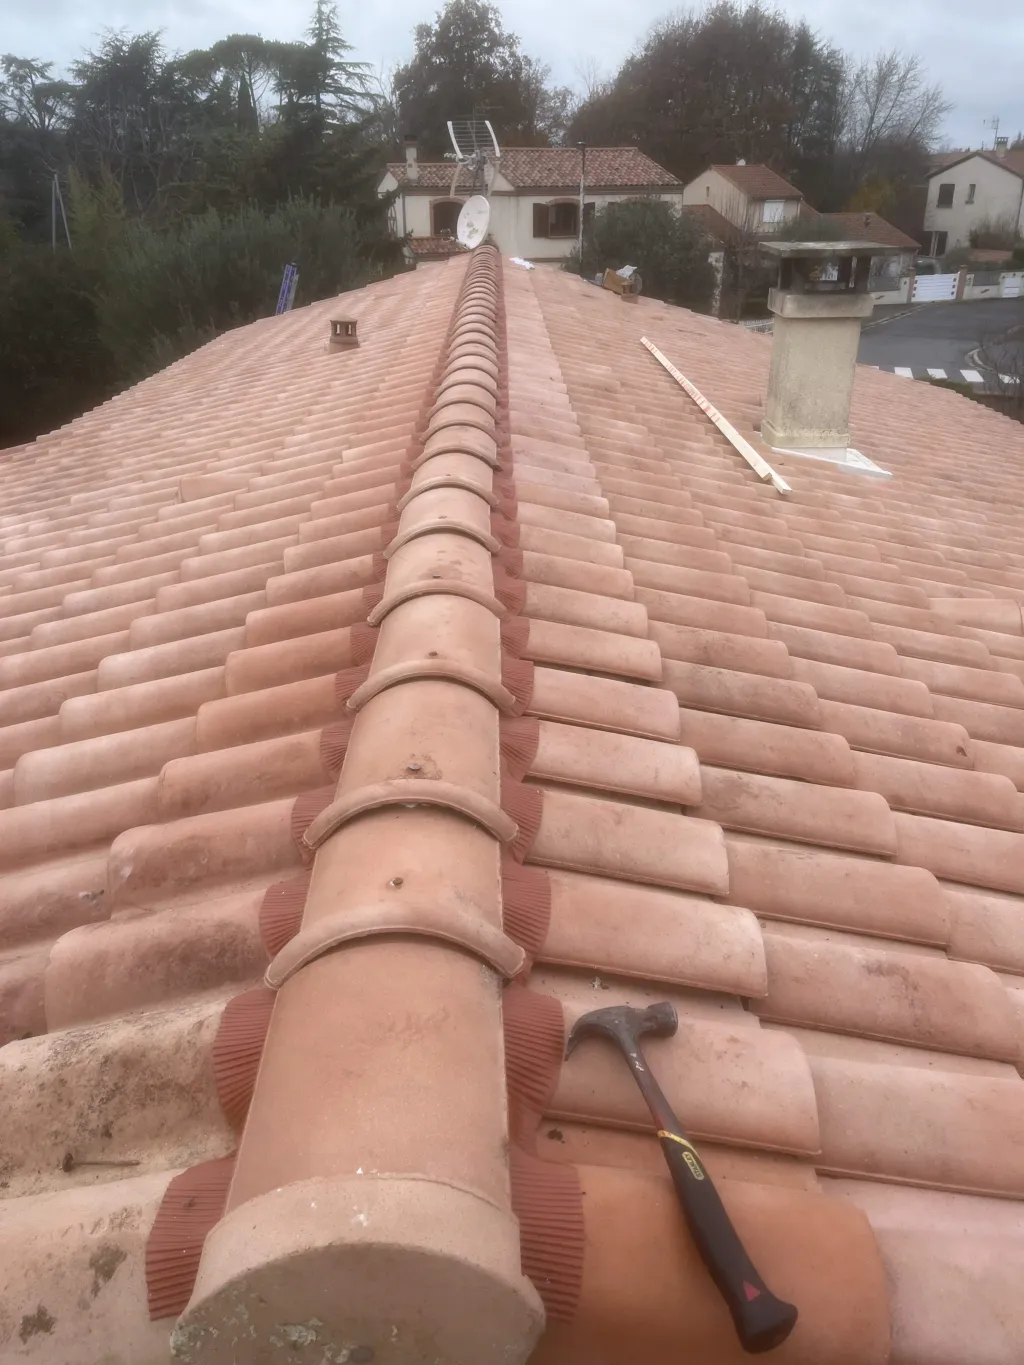 Le remplacement d'un faitage sur un toit - Blagnac